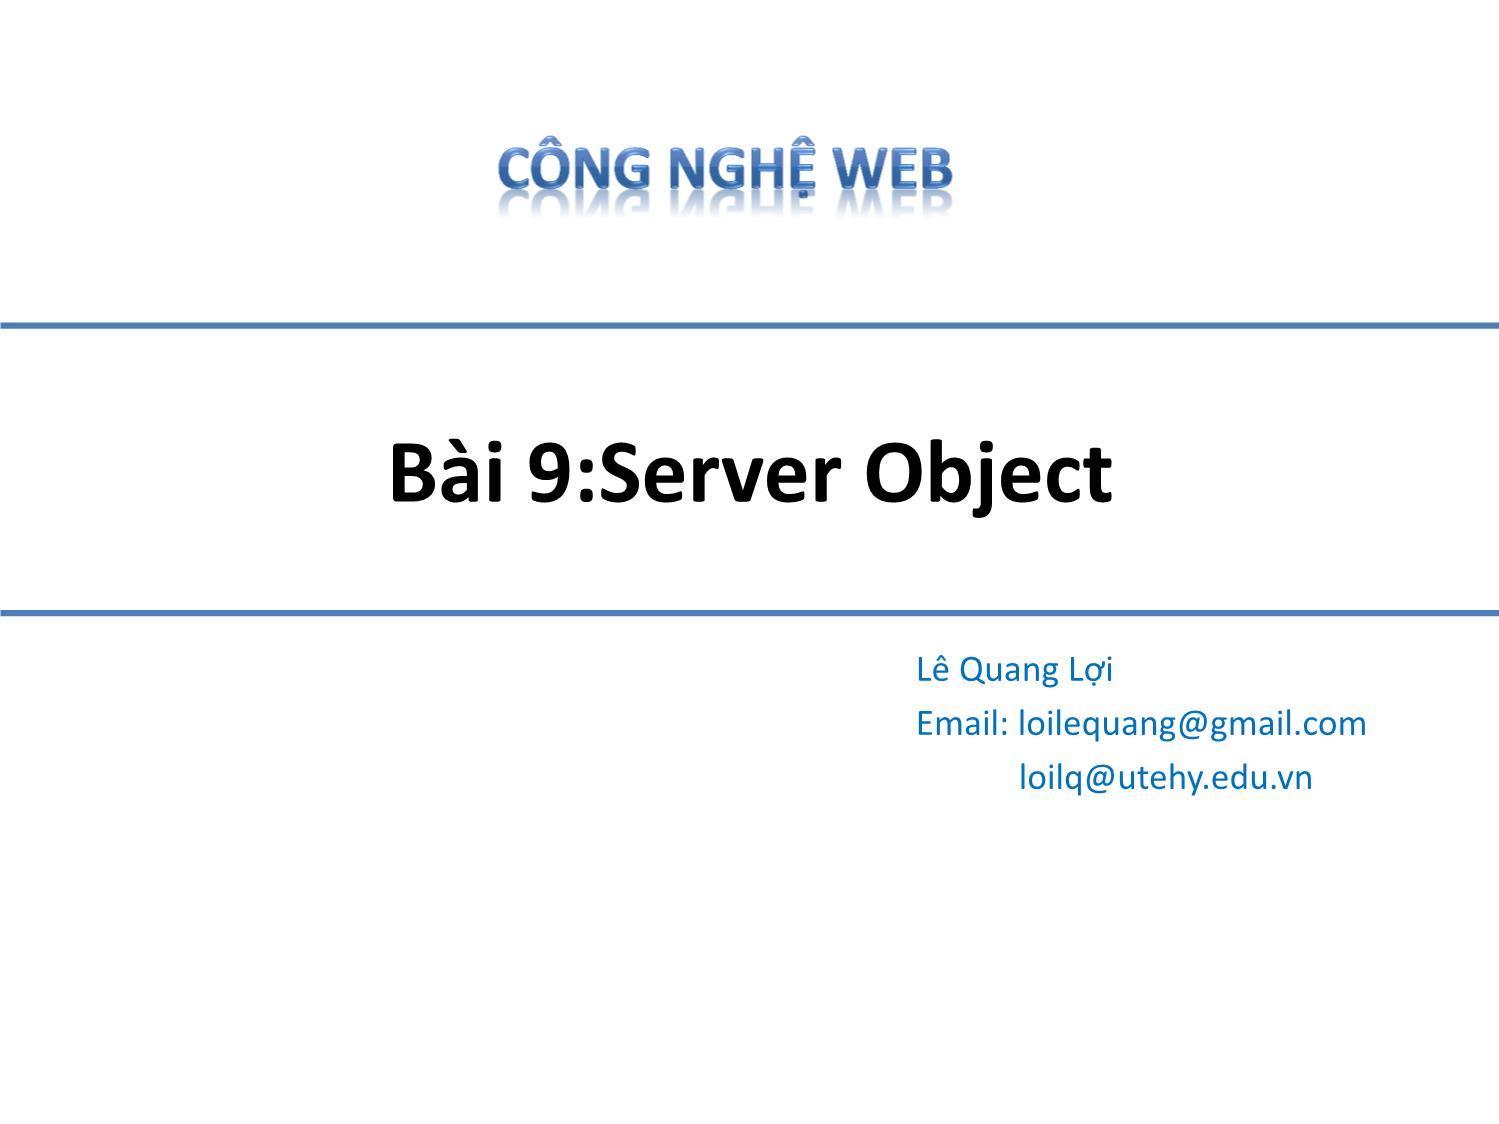 Bài giảng Công nghệ Web - Bài 9: Server Object - Lê Quang Lợi trang 1